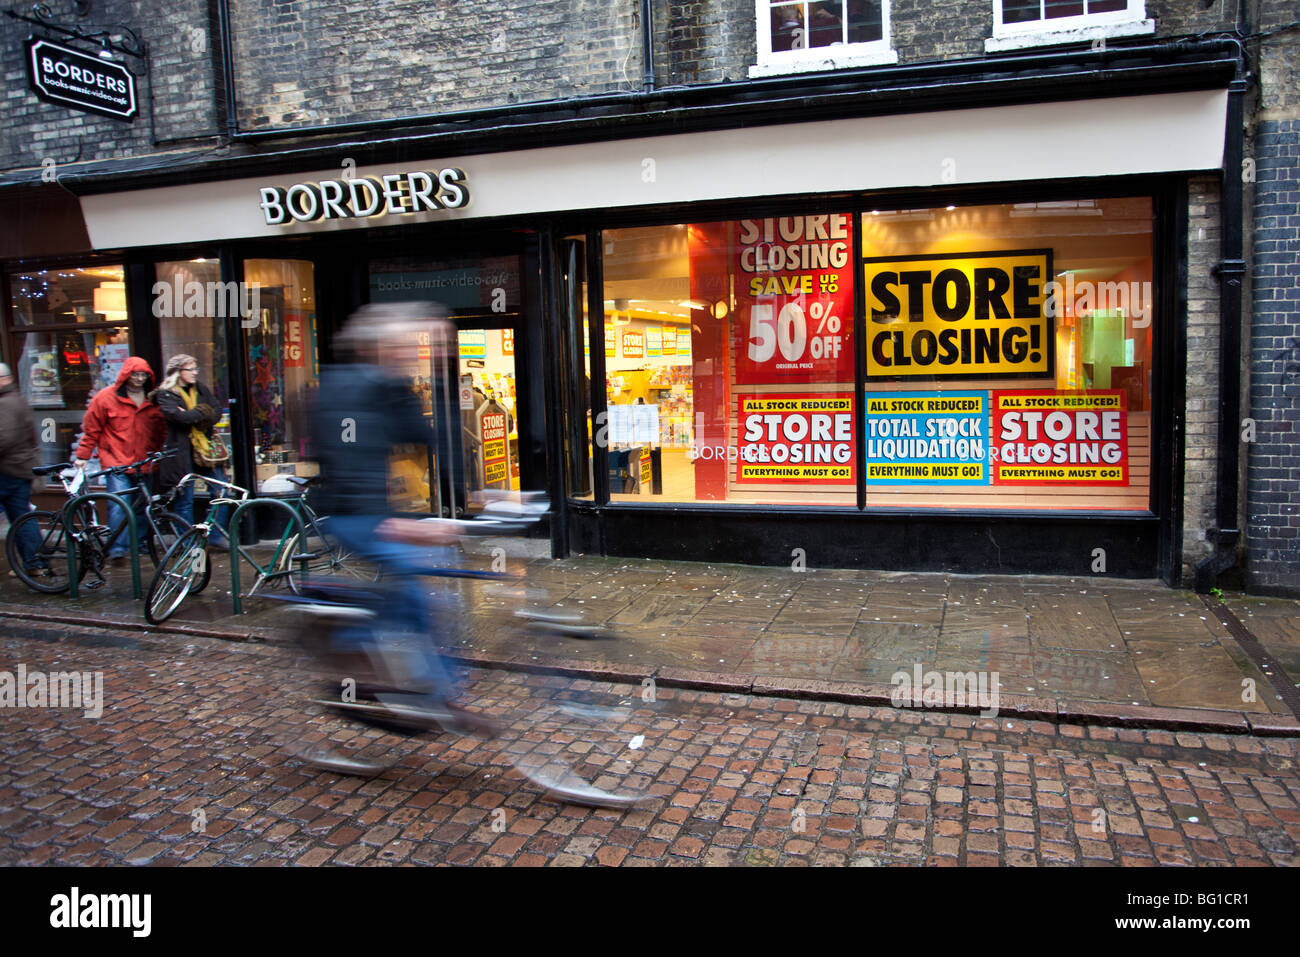 Cambridge - frontières magasin fermeture vente Banque D'Images